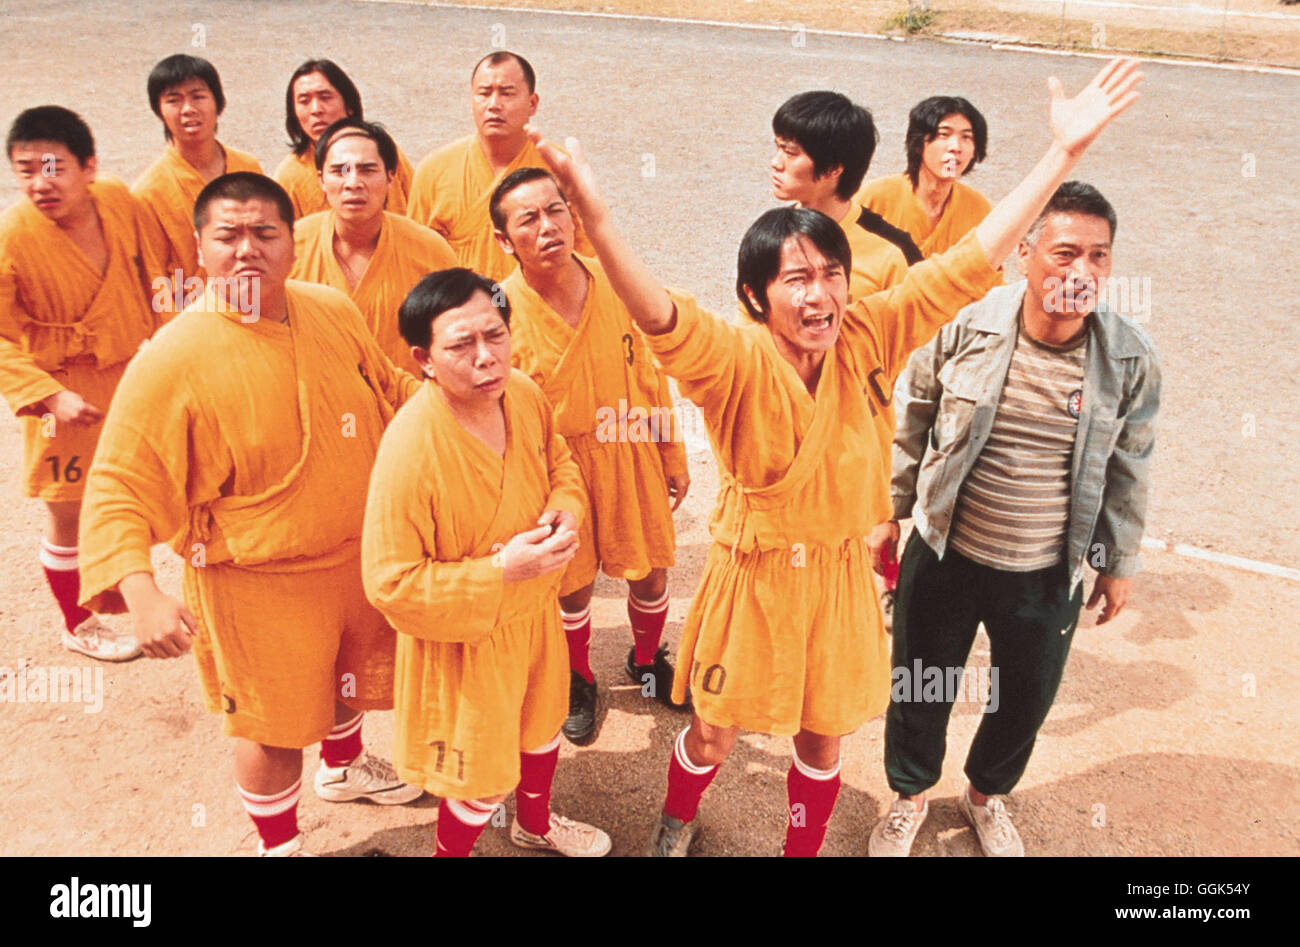 SHAOLIN KICKERS / Shaolin Soccer Hongkong 2002 / Stephen Chow Szene Stock  Photo - Alamy